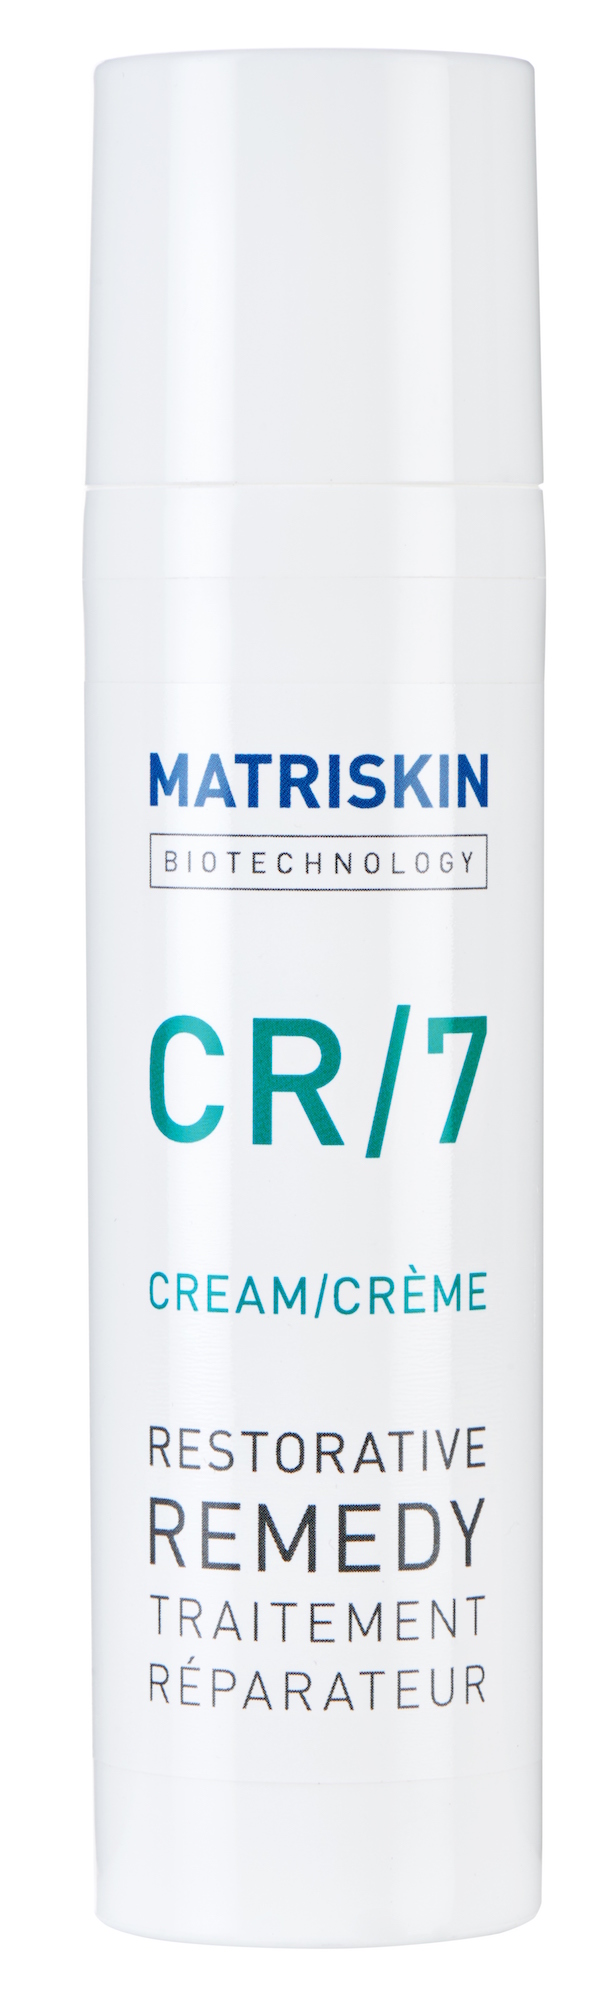 CR/7 de Matriskin, la crema “para todo” que hay que tener